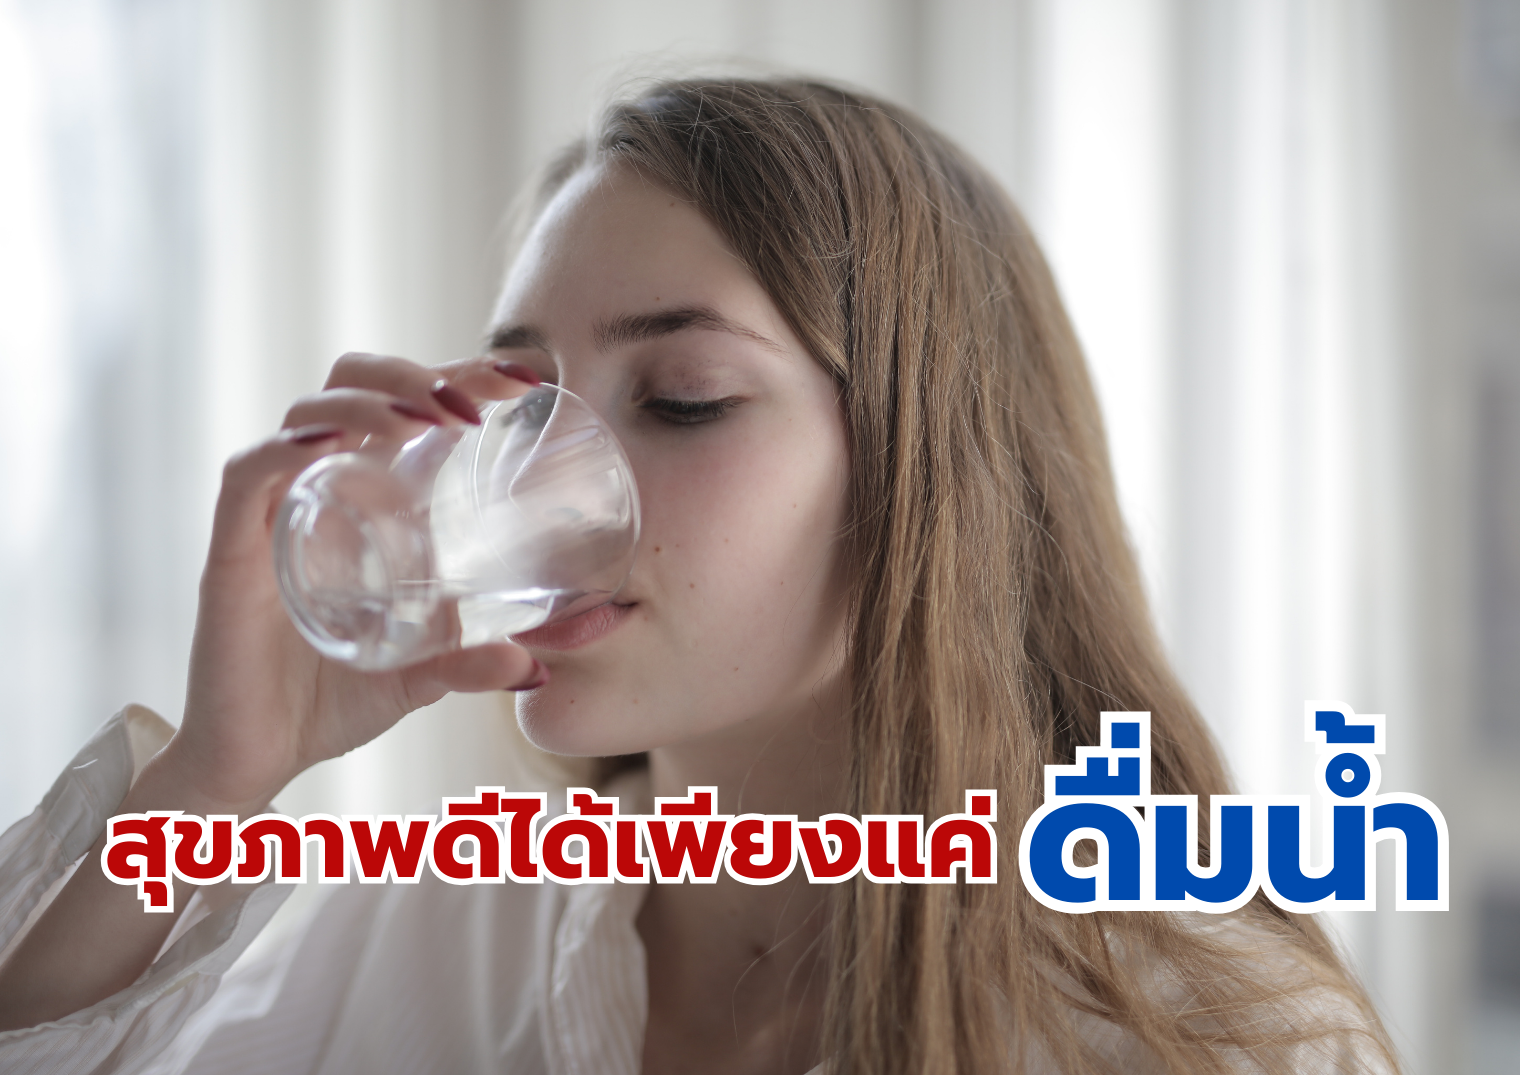 สุขภาพดีได้เพียงแค่ดื่มน้ำ 